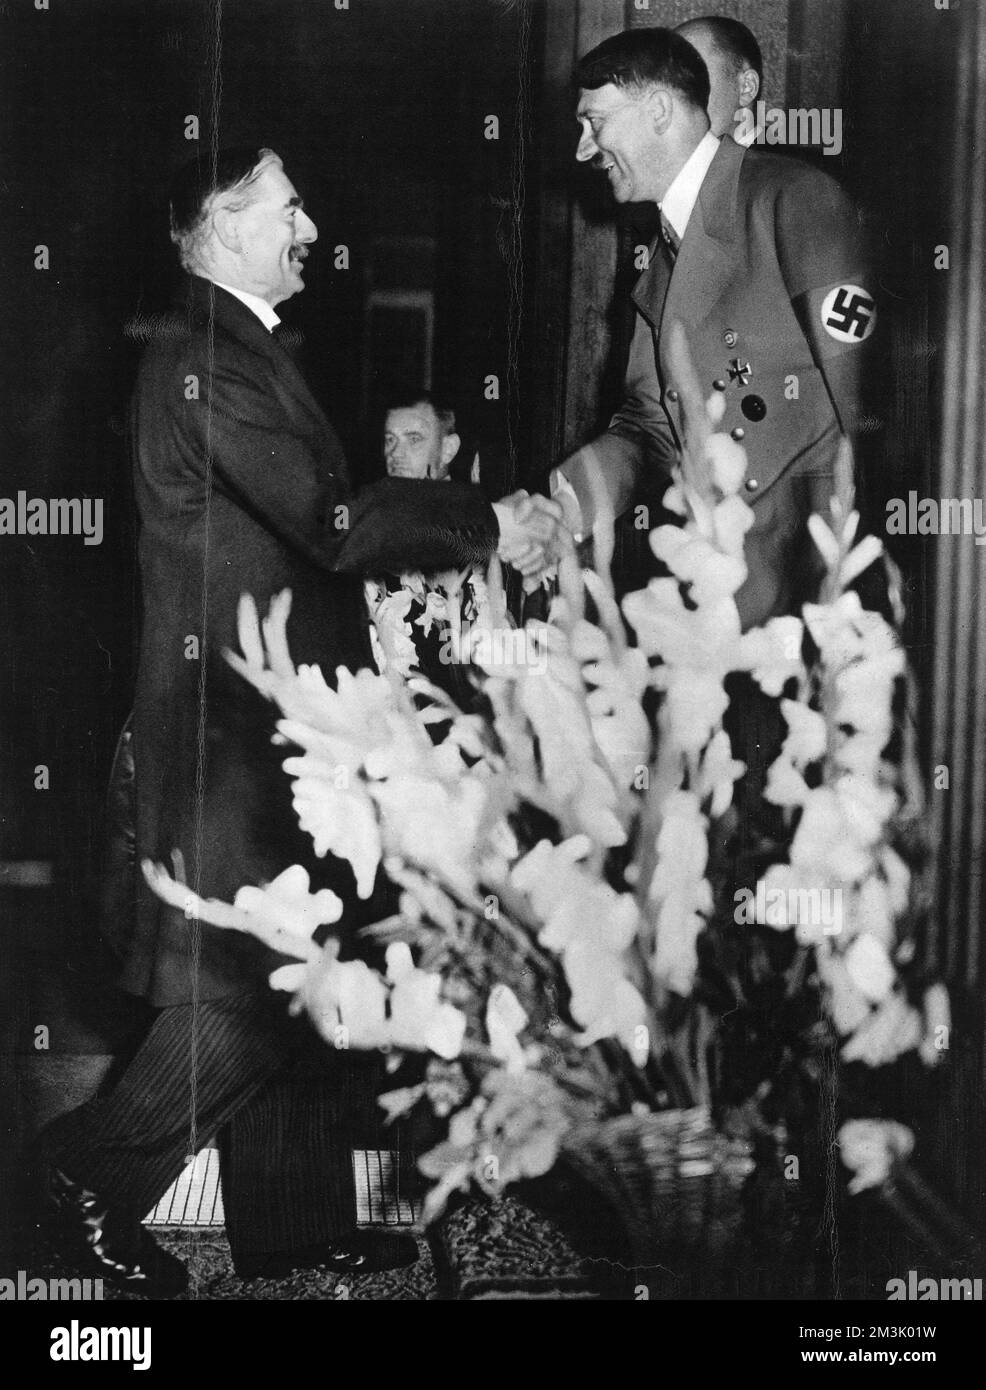 Neville Chamberlain, British Prime Minister, arriving at the Hotel Dreesen, Bad Godesberg, for talks with Adolf Hitler, German Fuhrer, 23rd September 1938.     Date: 1938 Stock Photo